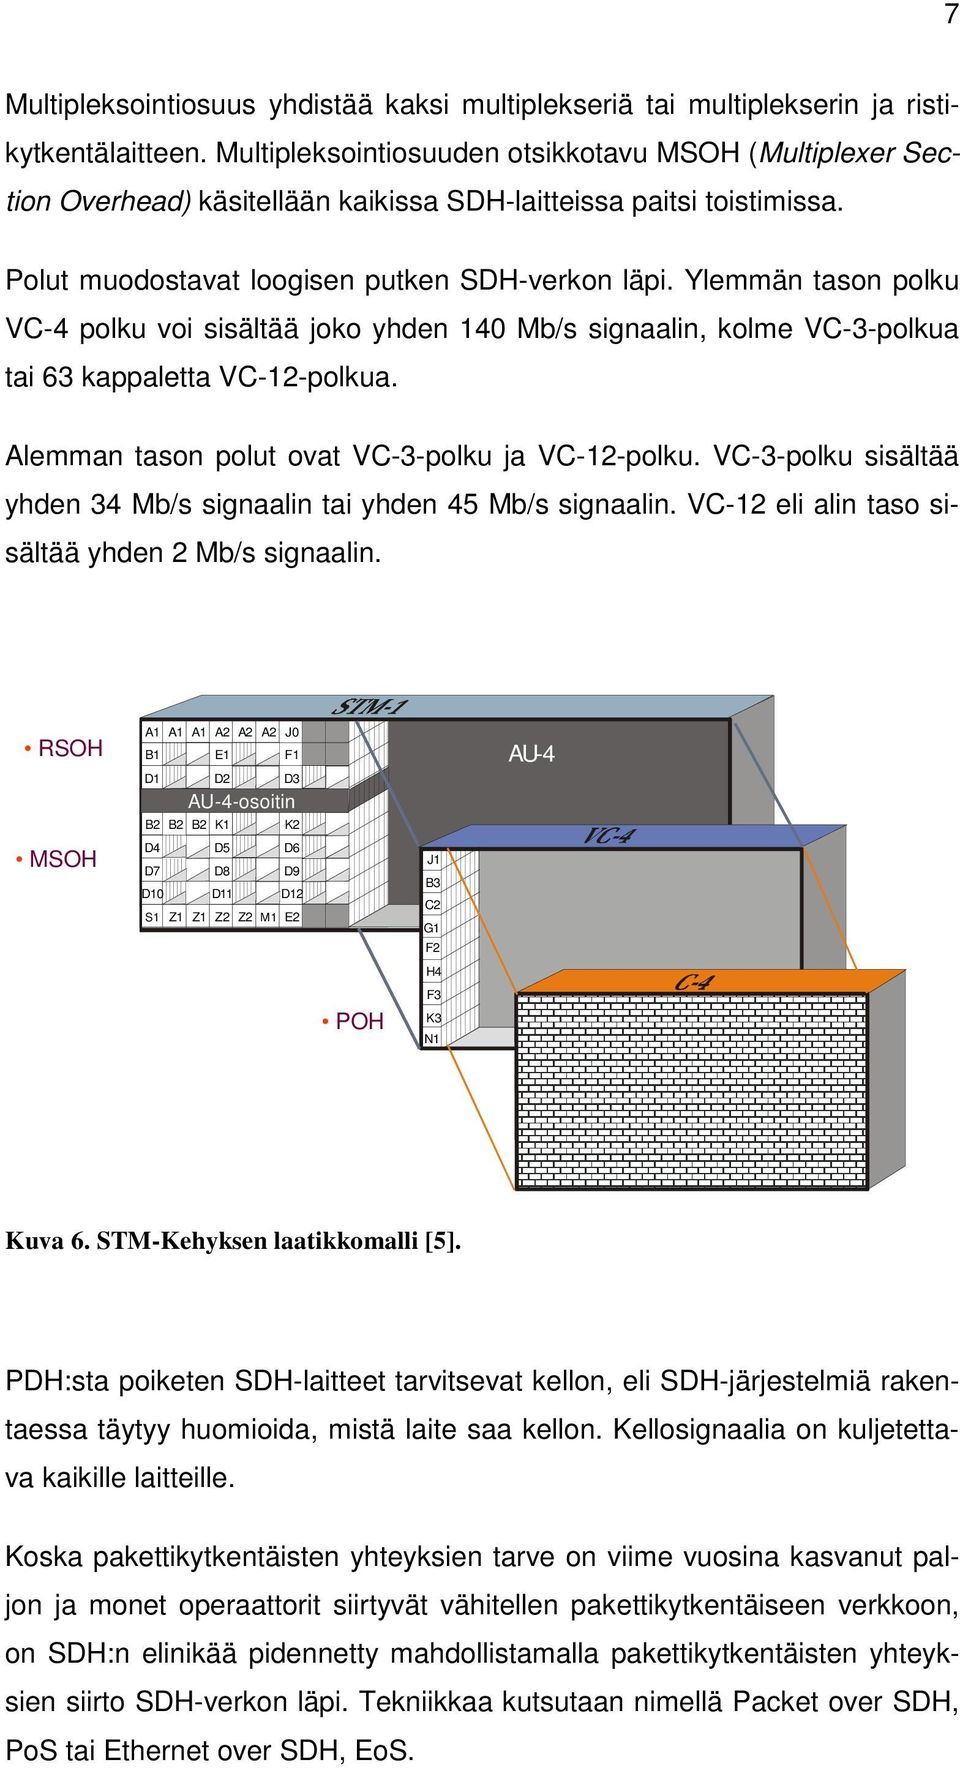 Ylemmän tason polku VC-4 polku voi sisältää joko yhden 140 Mb/s signaalin, kolme VC-3-polkua tai 63 kappaletta VC-12-polkua. Alemman tason polut ovat VC-3-polku ja VC-12-polku.